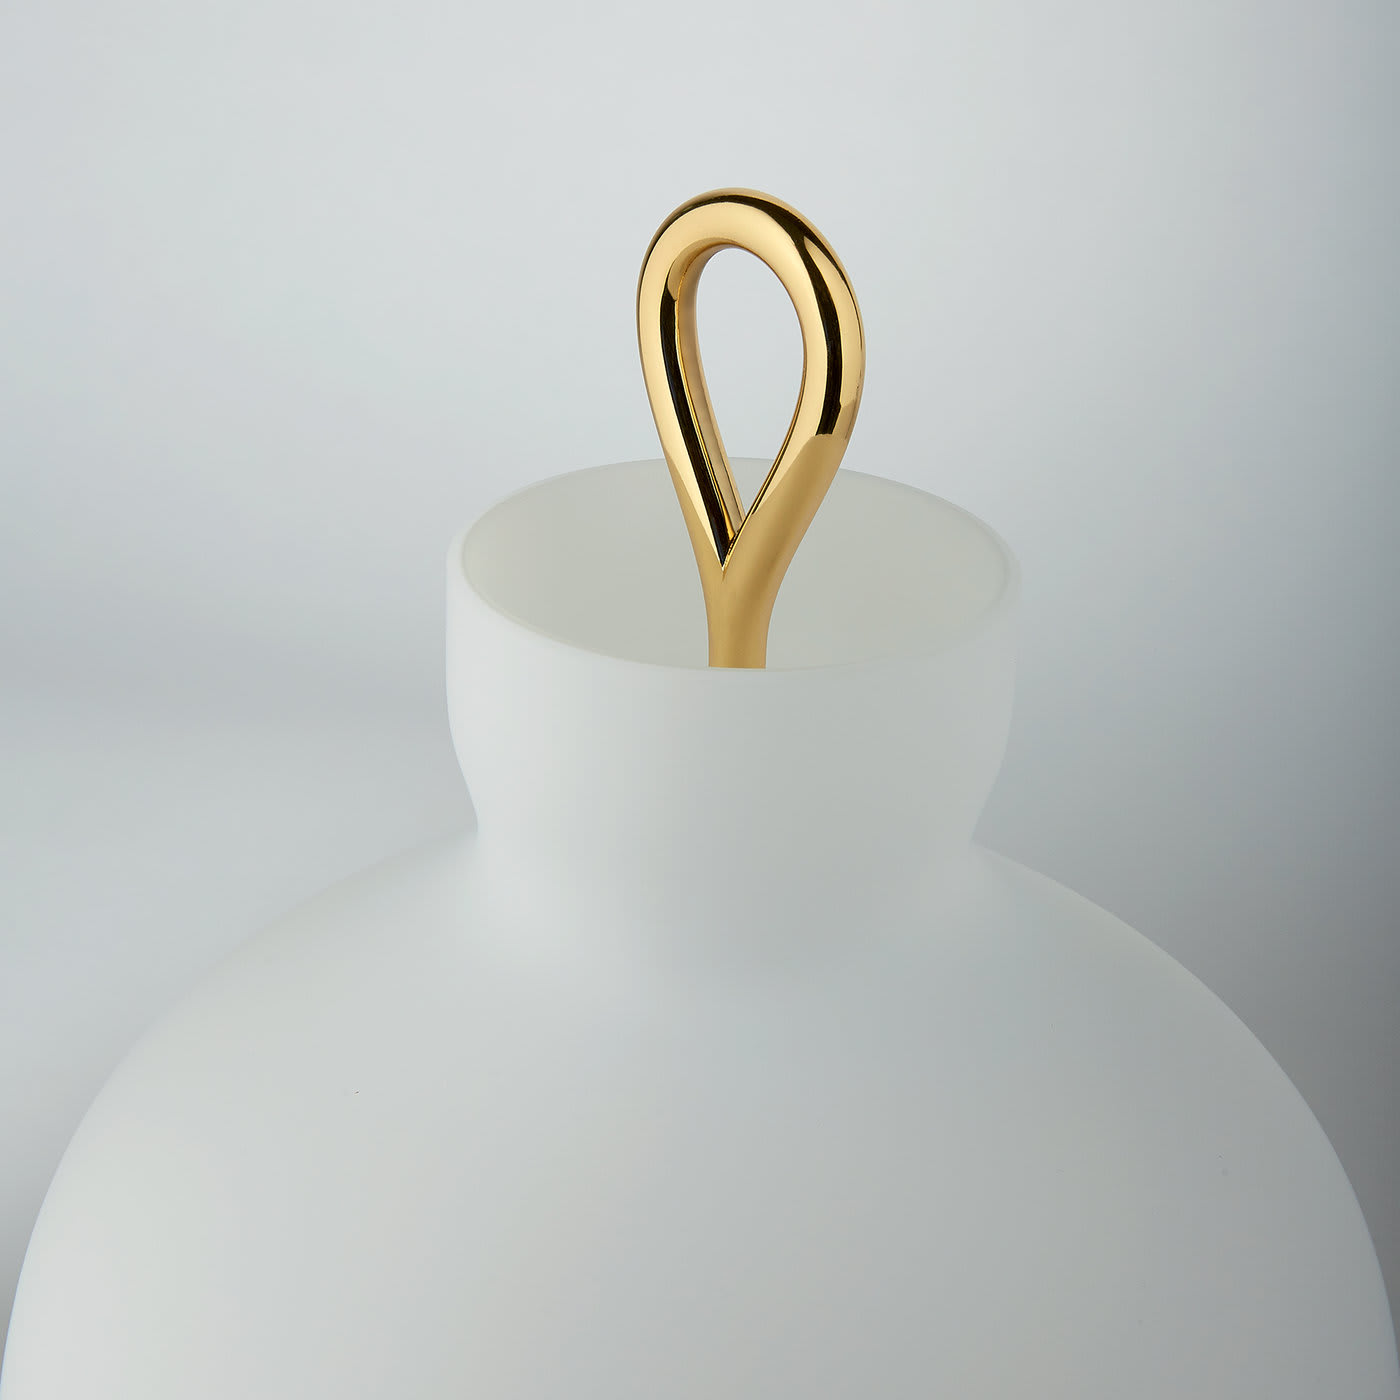 Arenzano Table Lamp by Ignazio Gardella - Tato